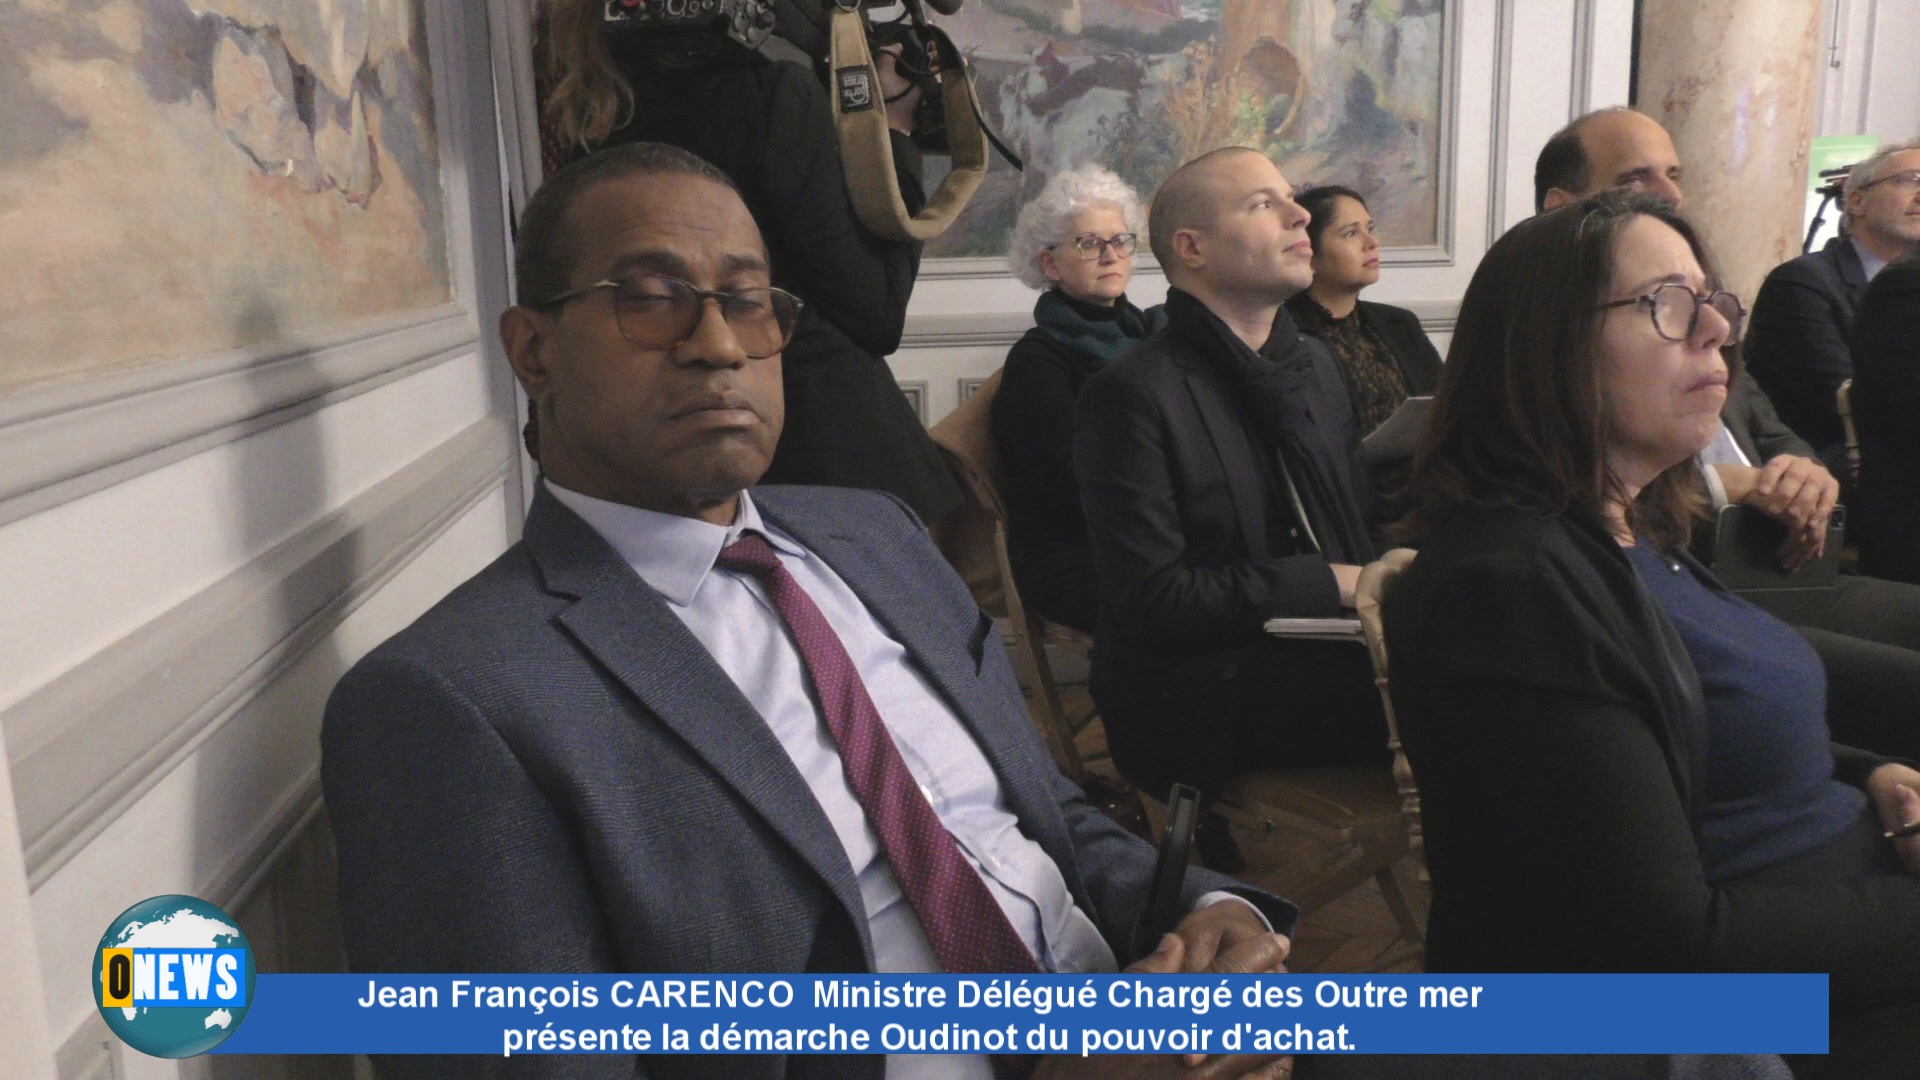 [Vidéo] Jean François CARENCO  Ministre Délégué Chargé des Outre mer présente la démarche Oudinot du pouvoir d’achat.